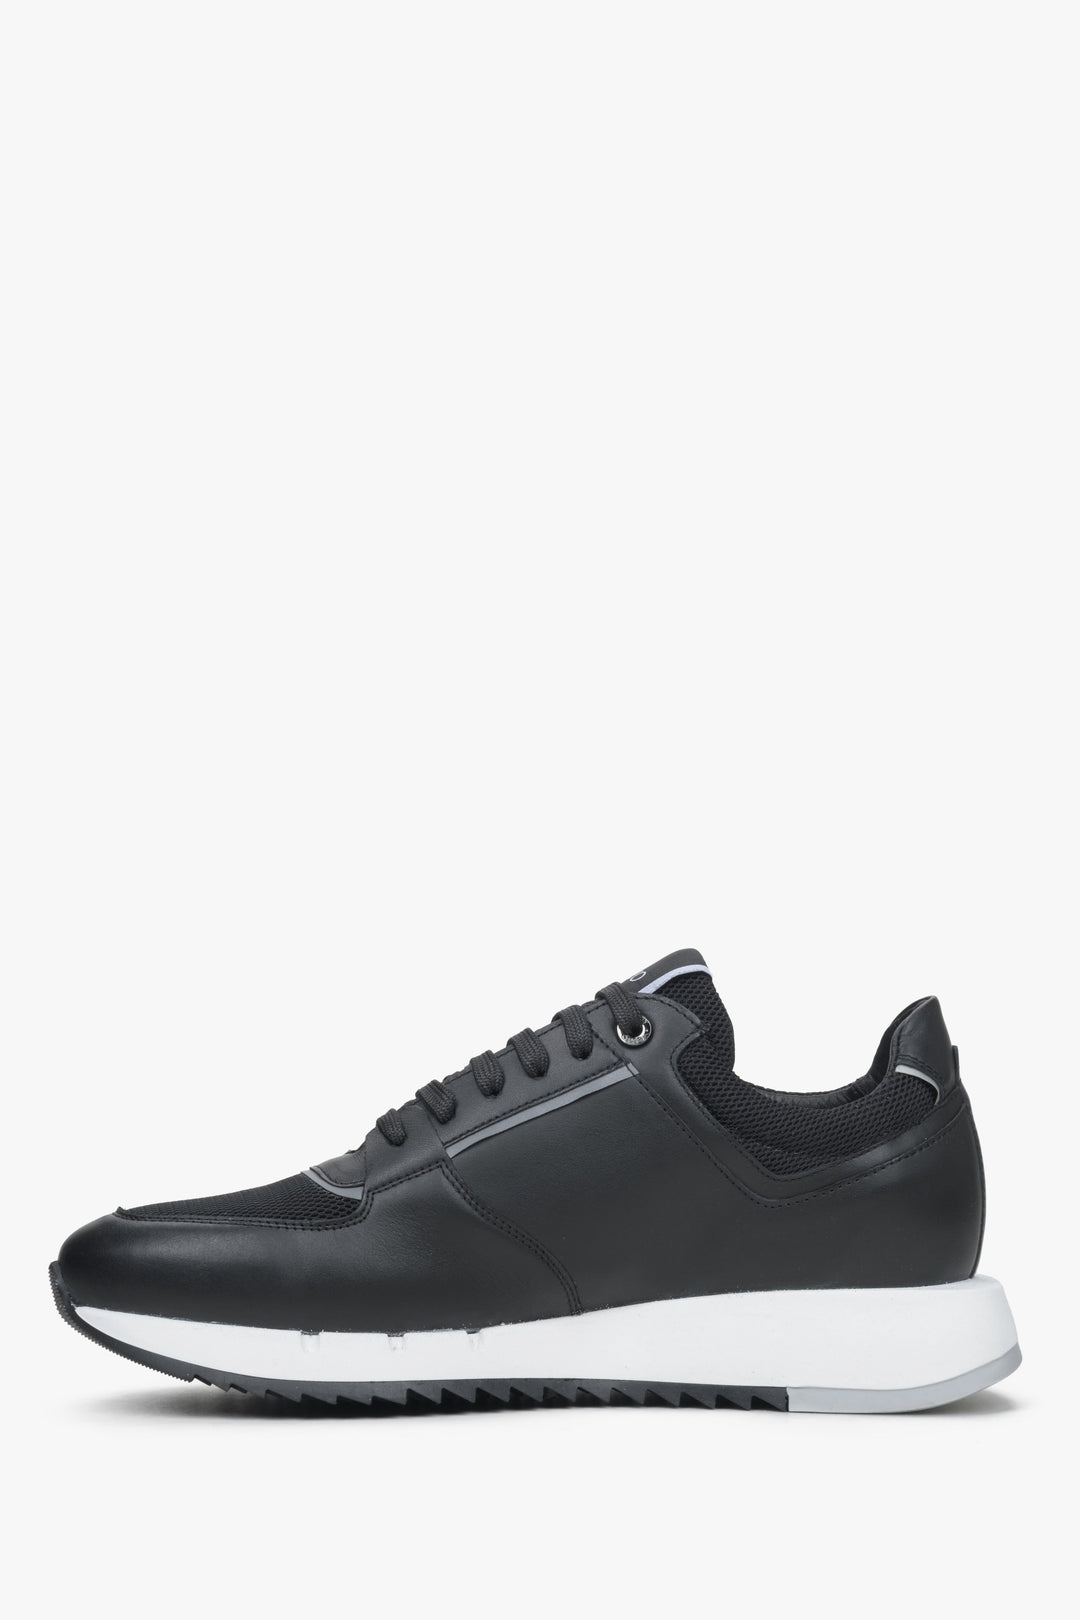 Wygodne sneakersy męskie w kolorze czarnym Estro - profil buta.